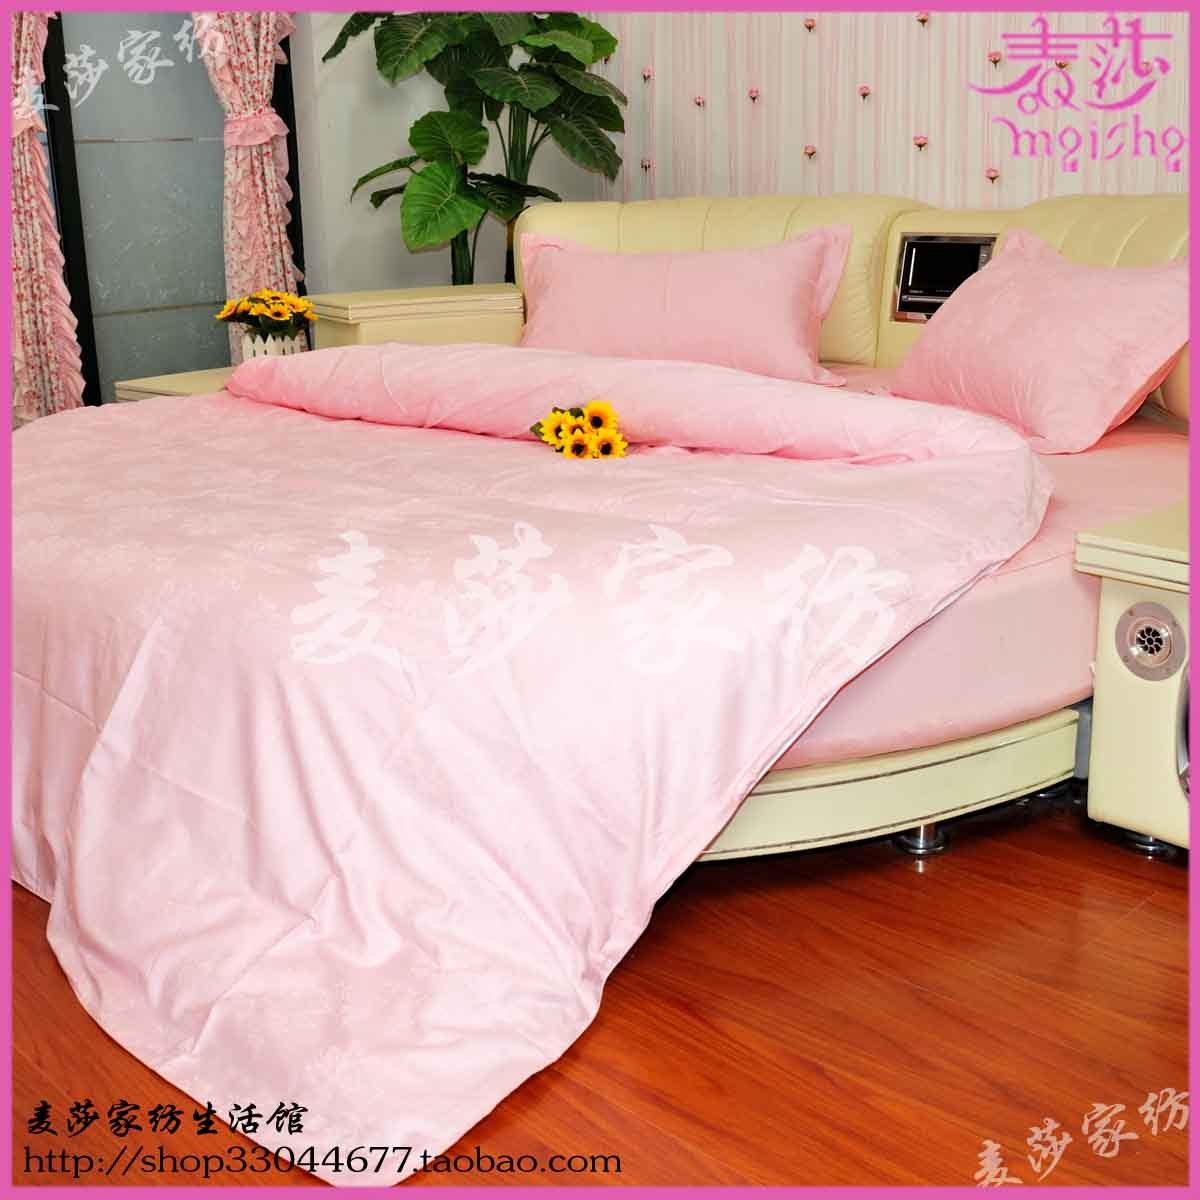 圆床床上用品套件定做 粉红公主 圆床笠四件套 玉色玫瑰花 纯色